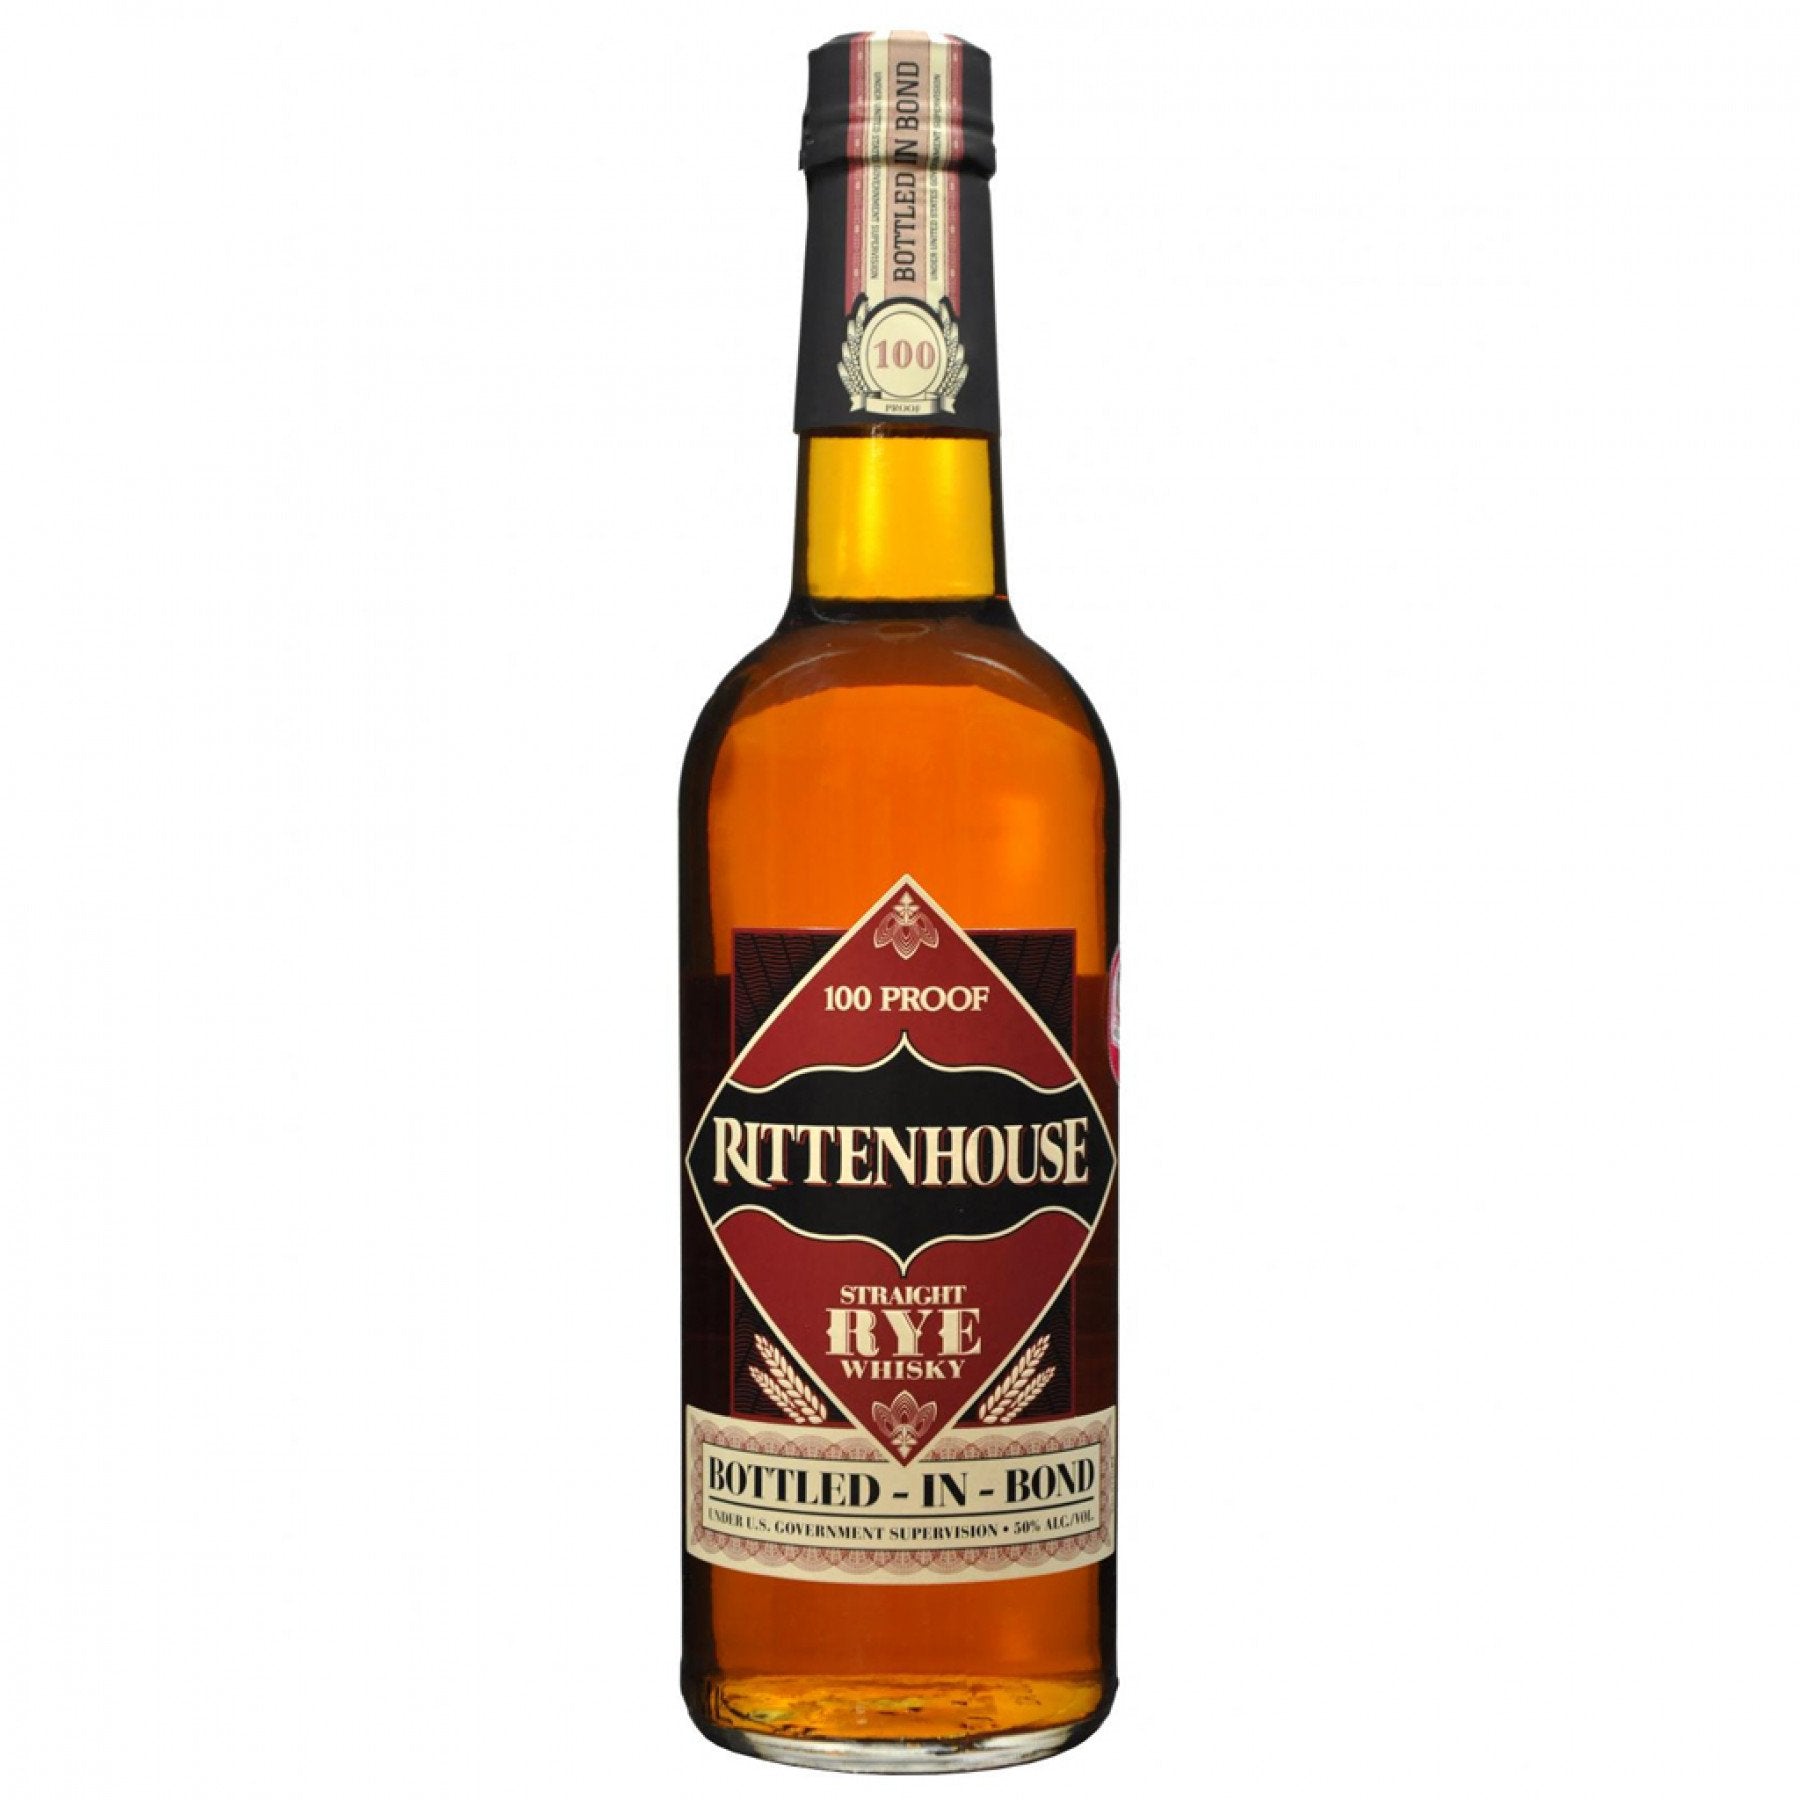 Rittenhouse Rye Whisky Bottled-In